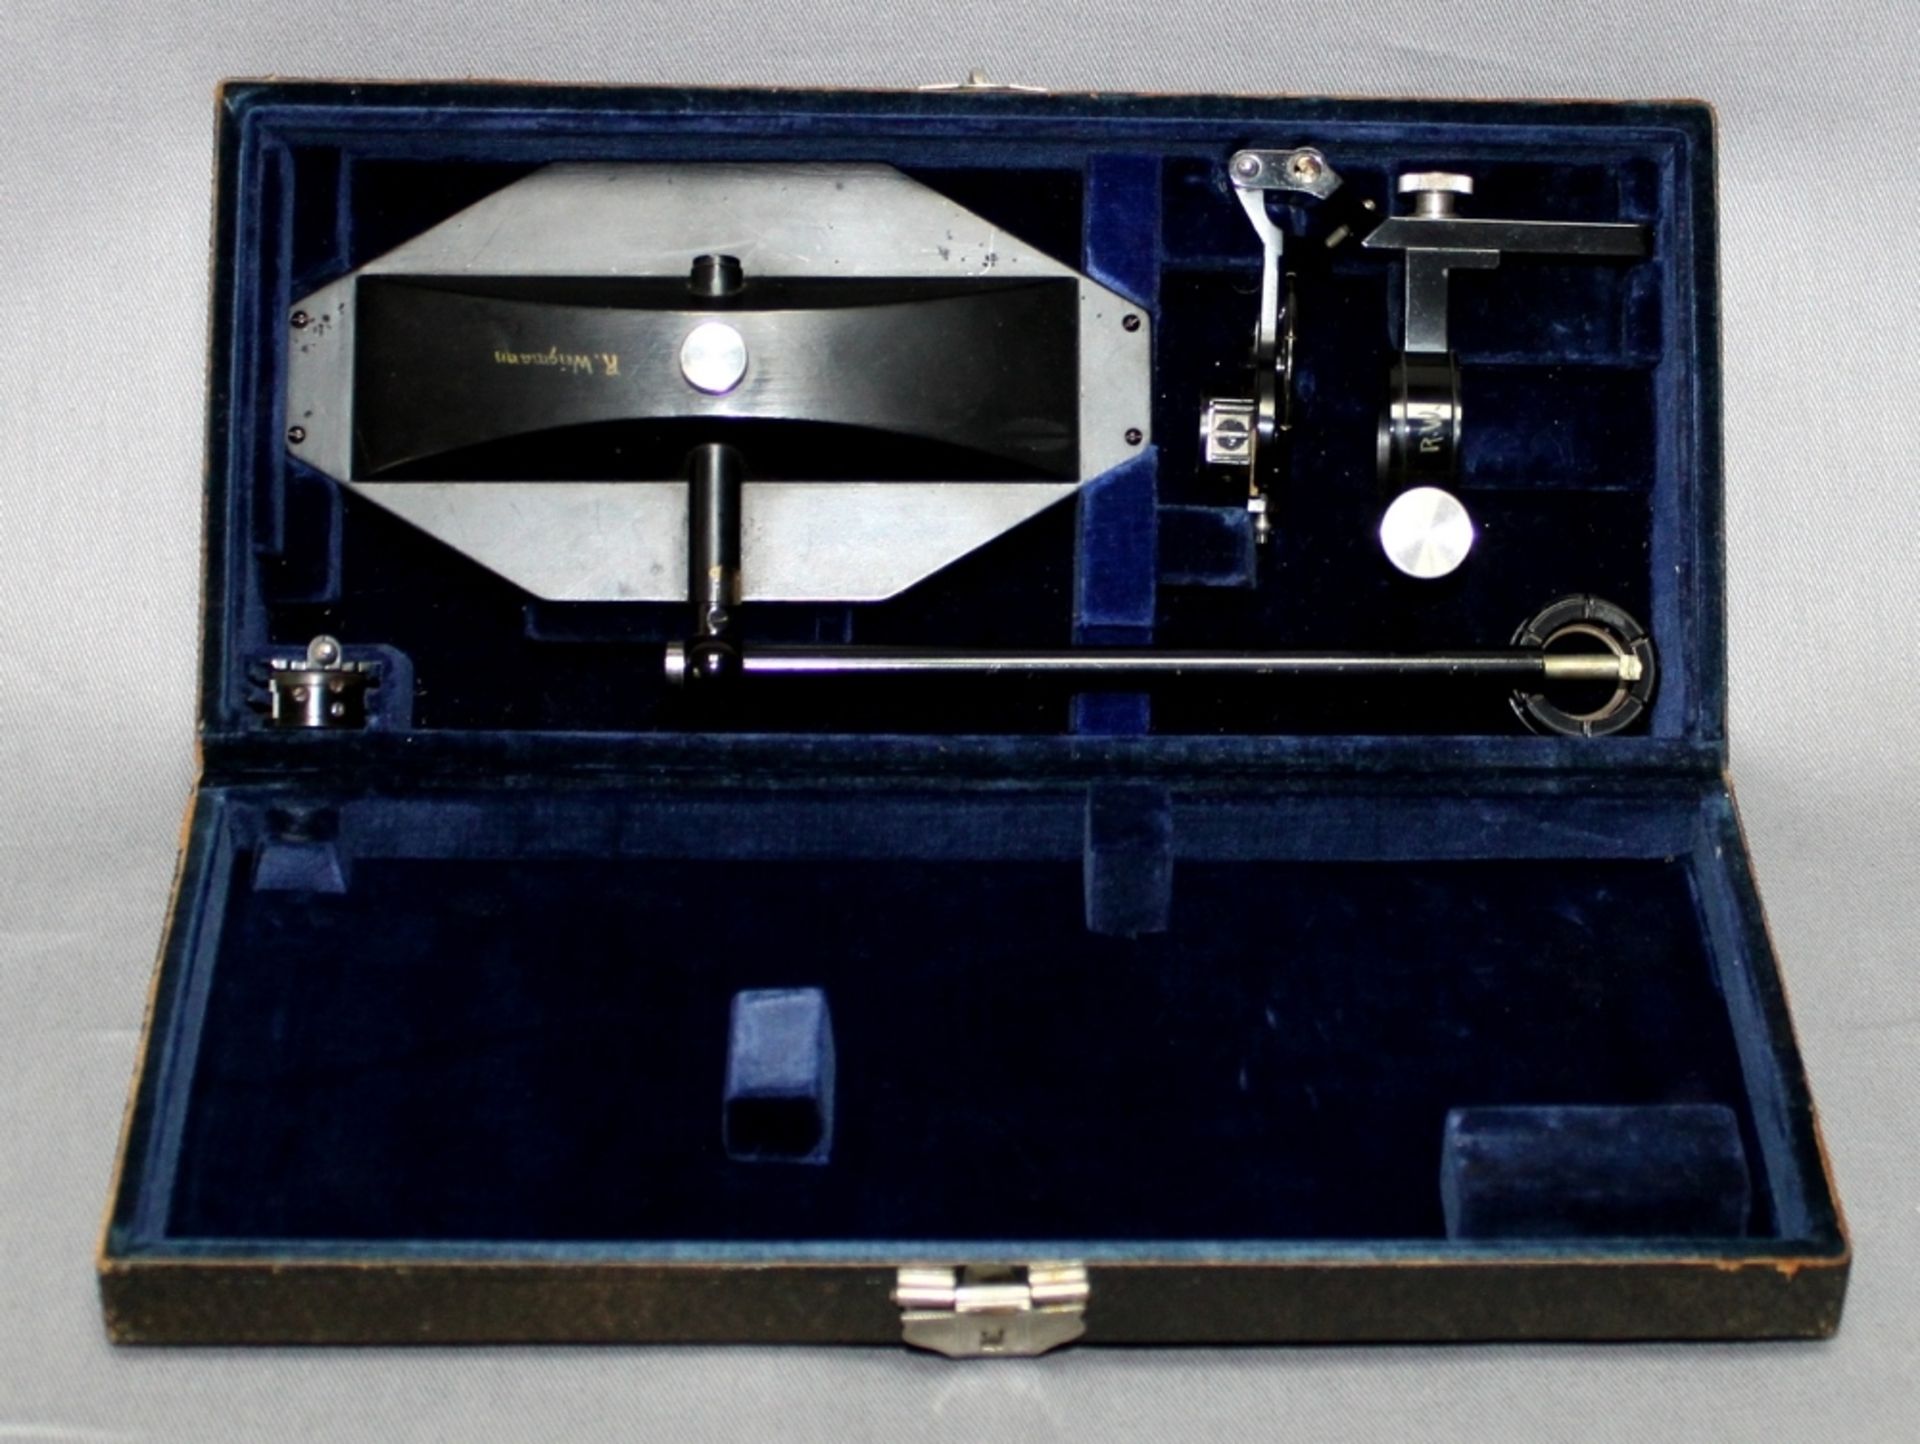 Mikroskop. Zeichenapparat. Carl Zeiss – Jena. Mikroskopzubehör zur Unterstützung des Zeichnens